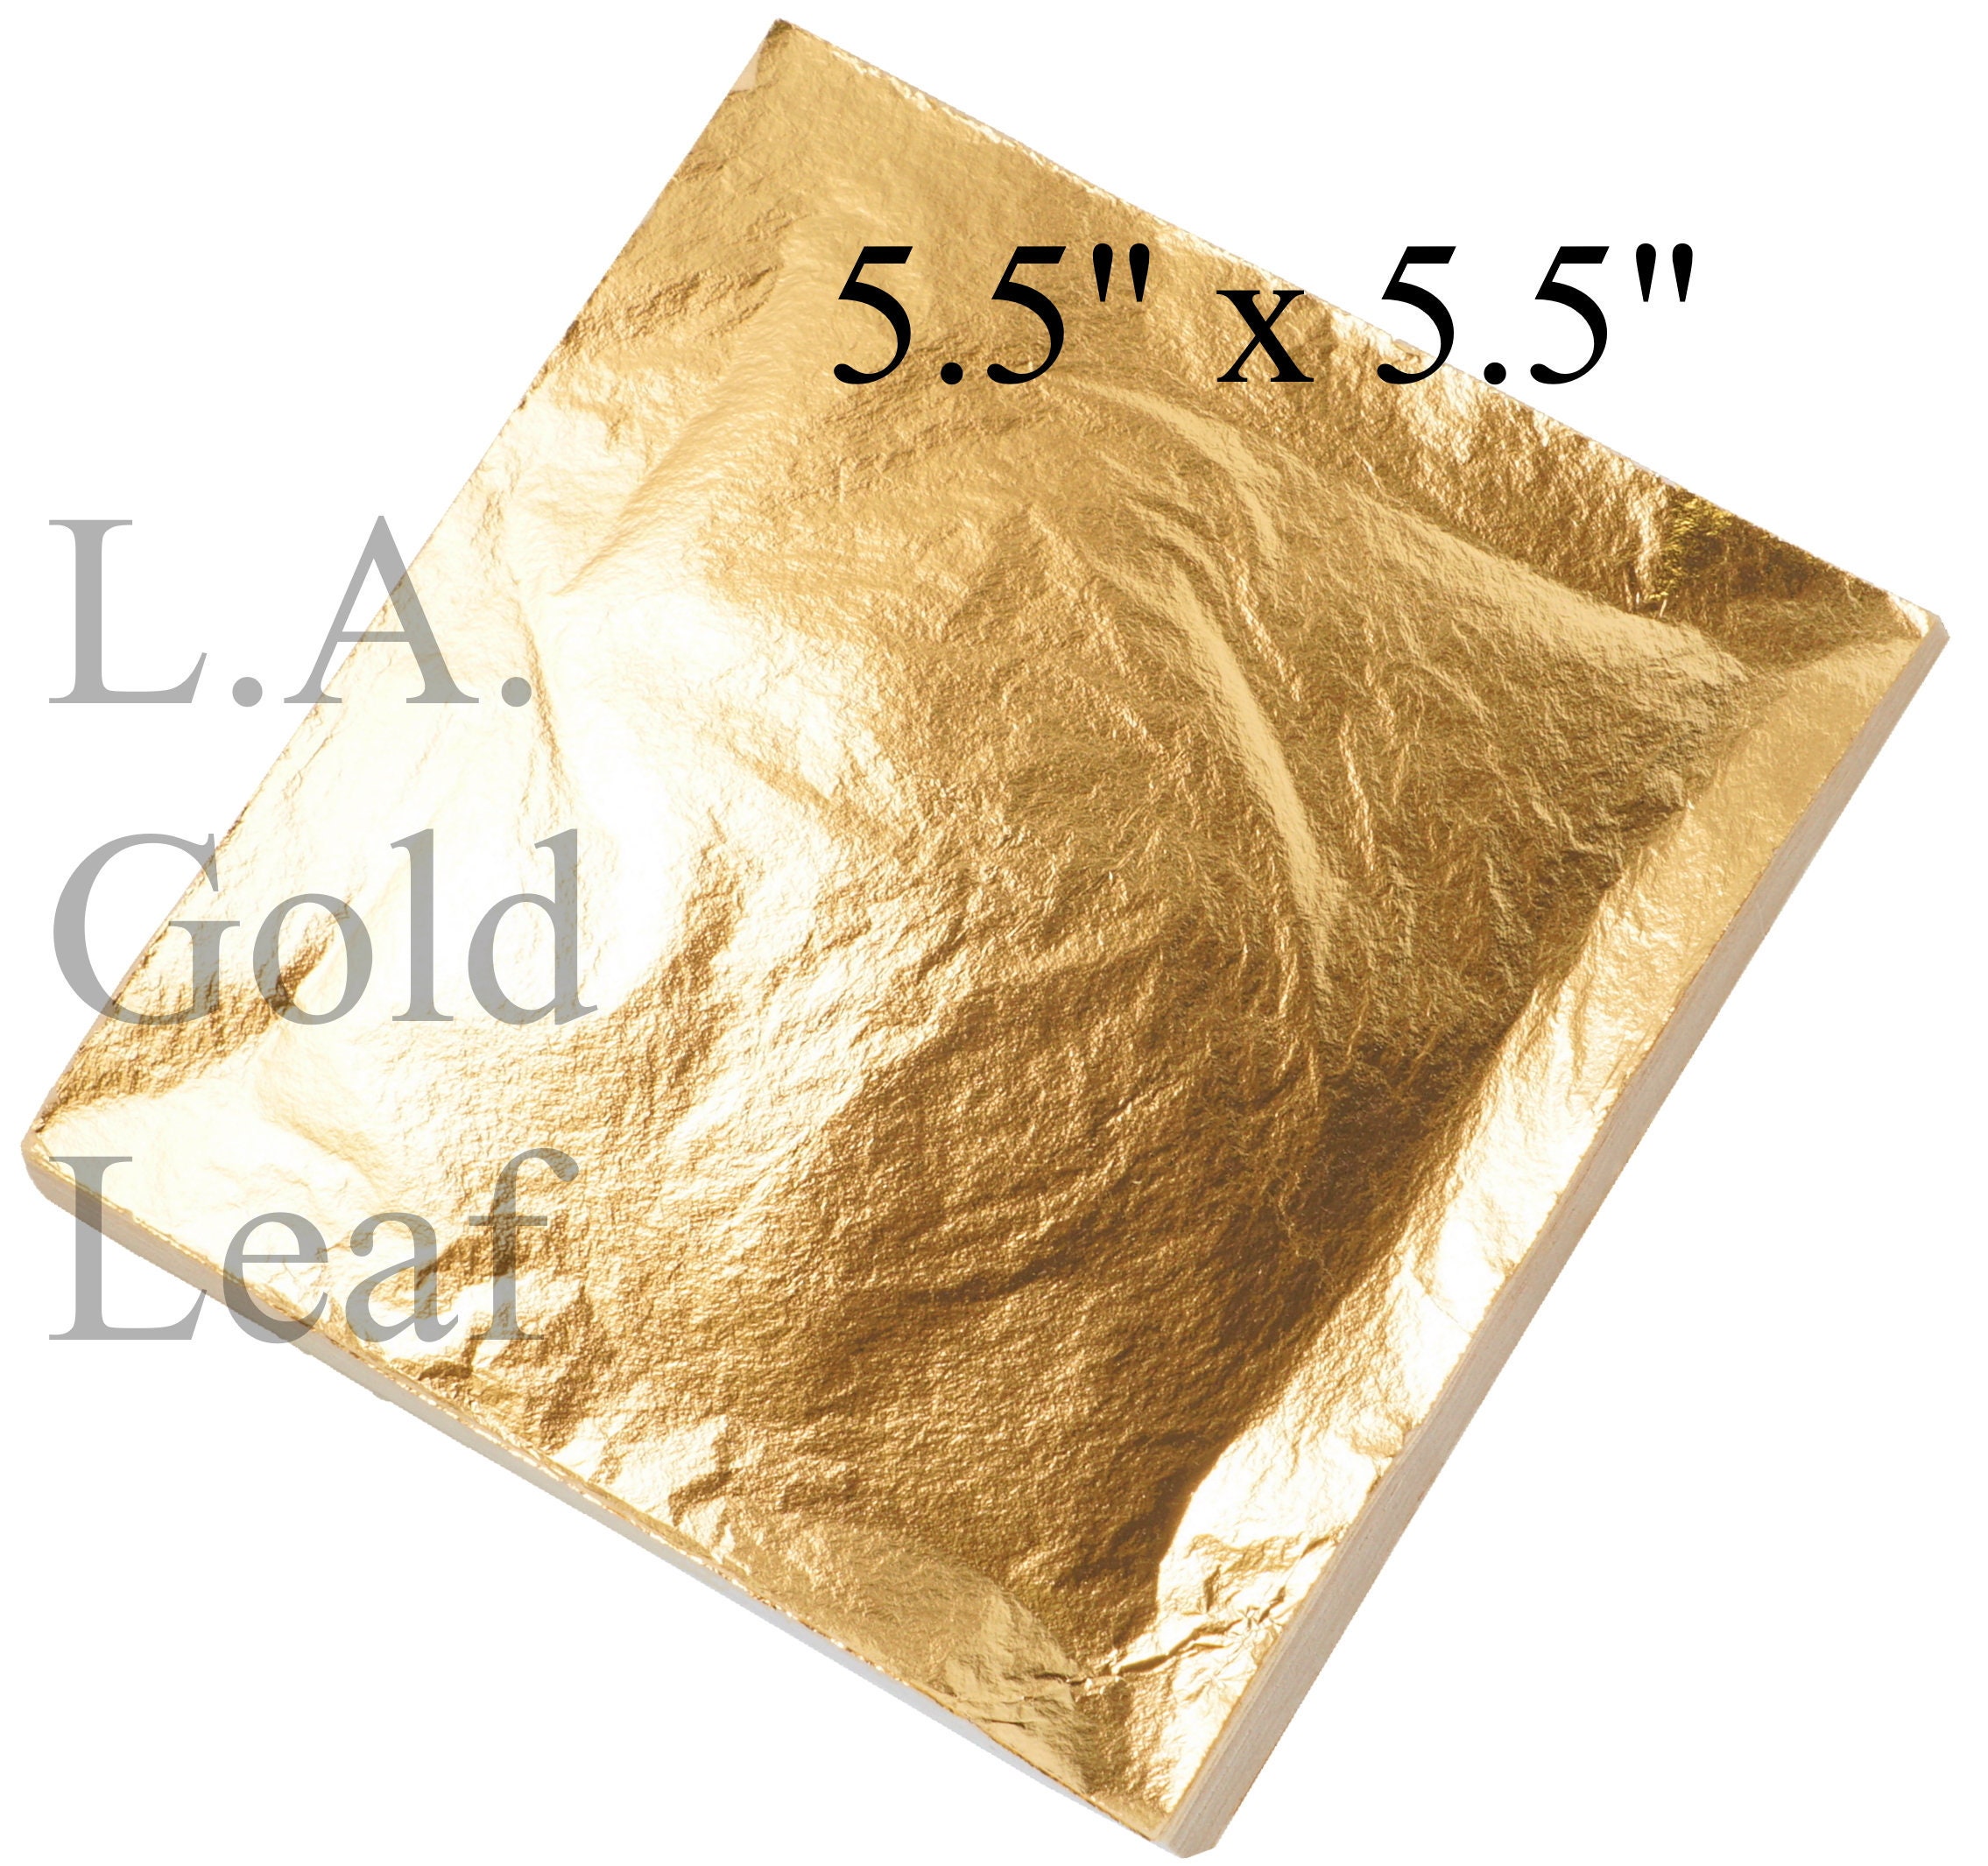 Imitation Gold Leaf Gilding Kit - 8 oz.